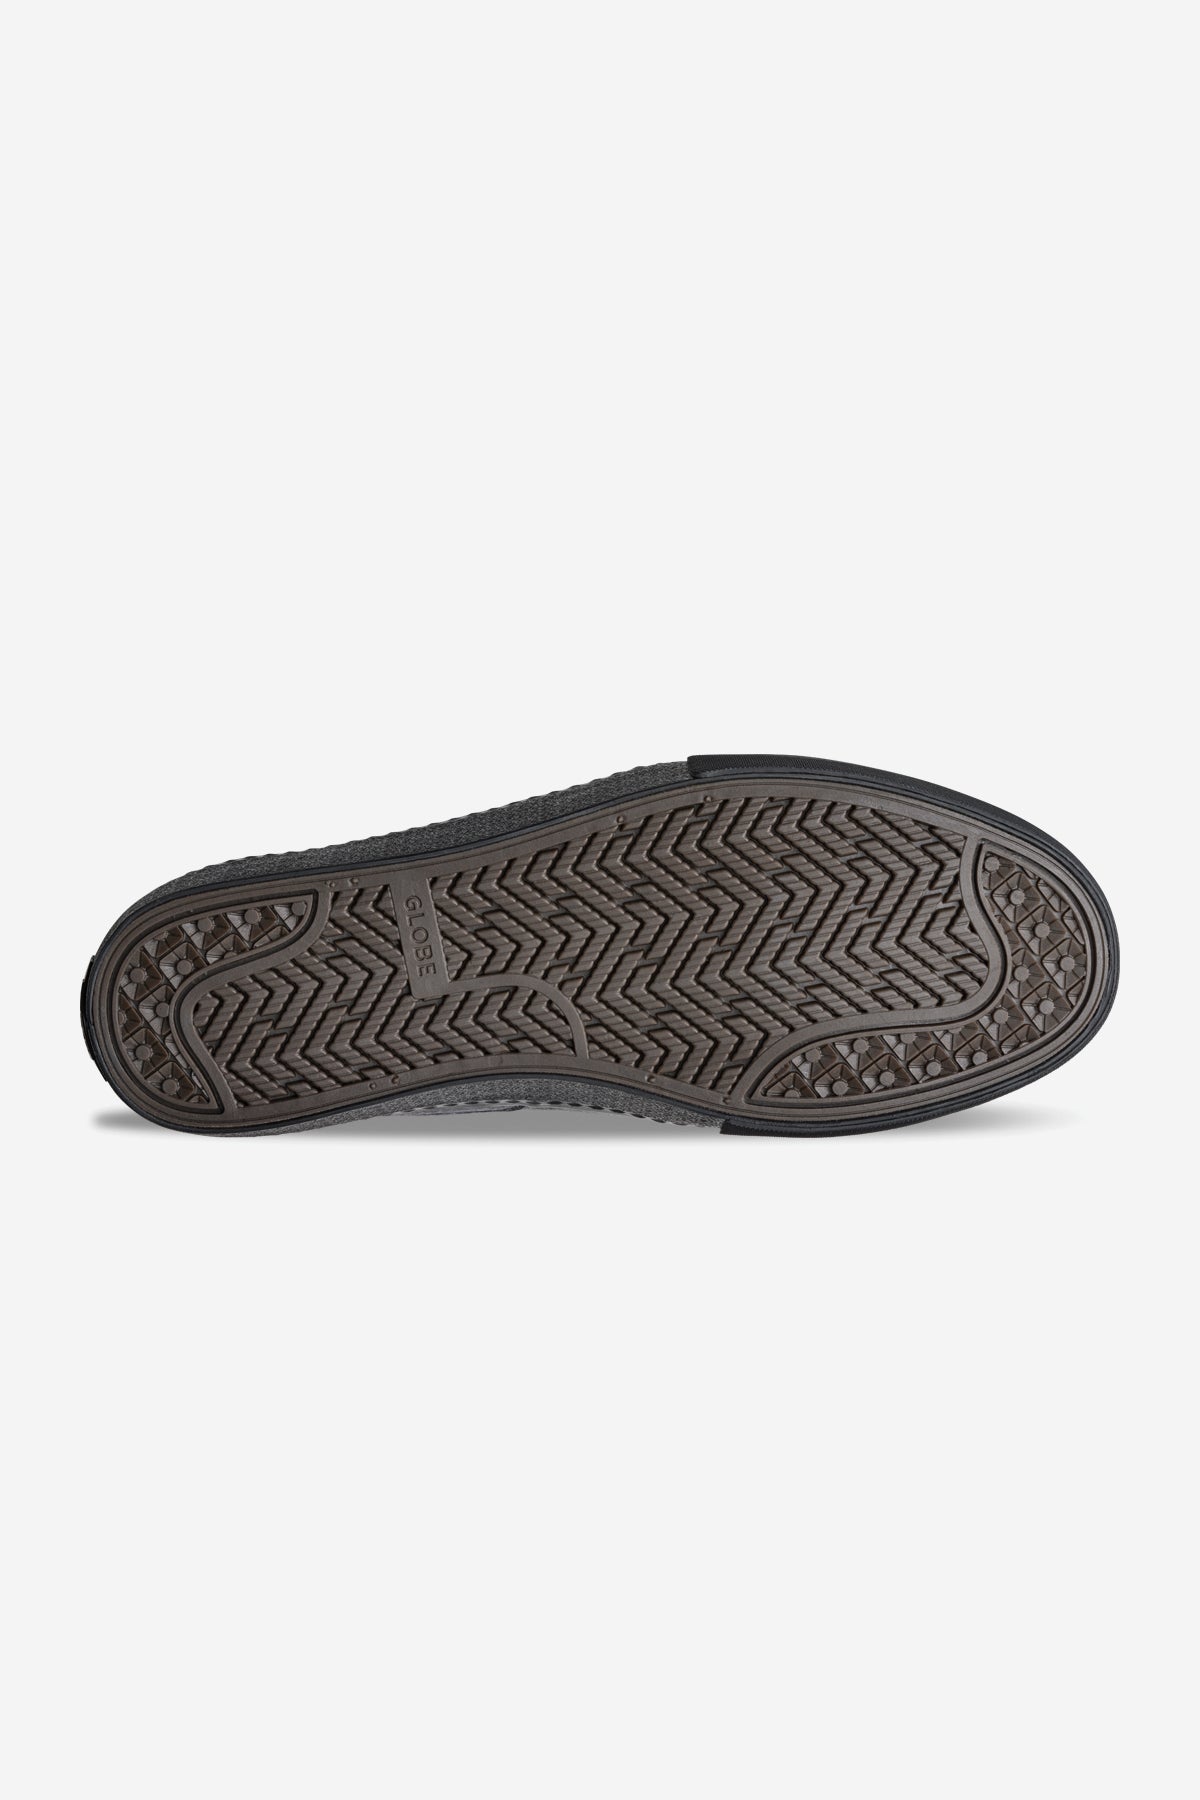 liaizon distress gris noir skateboard chaussures